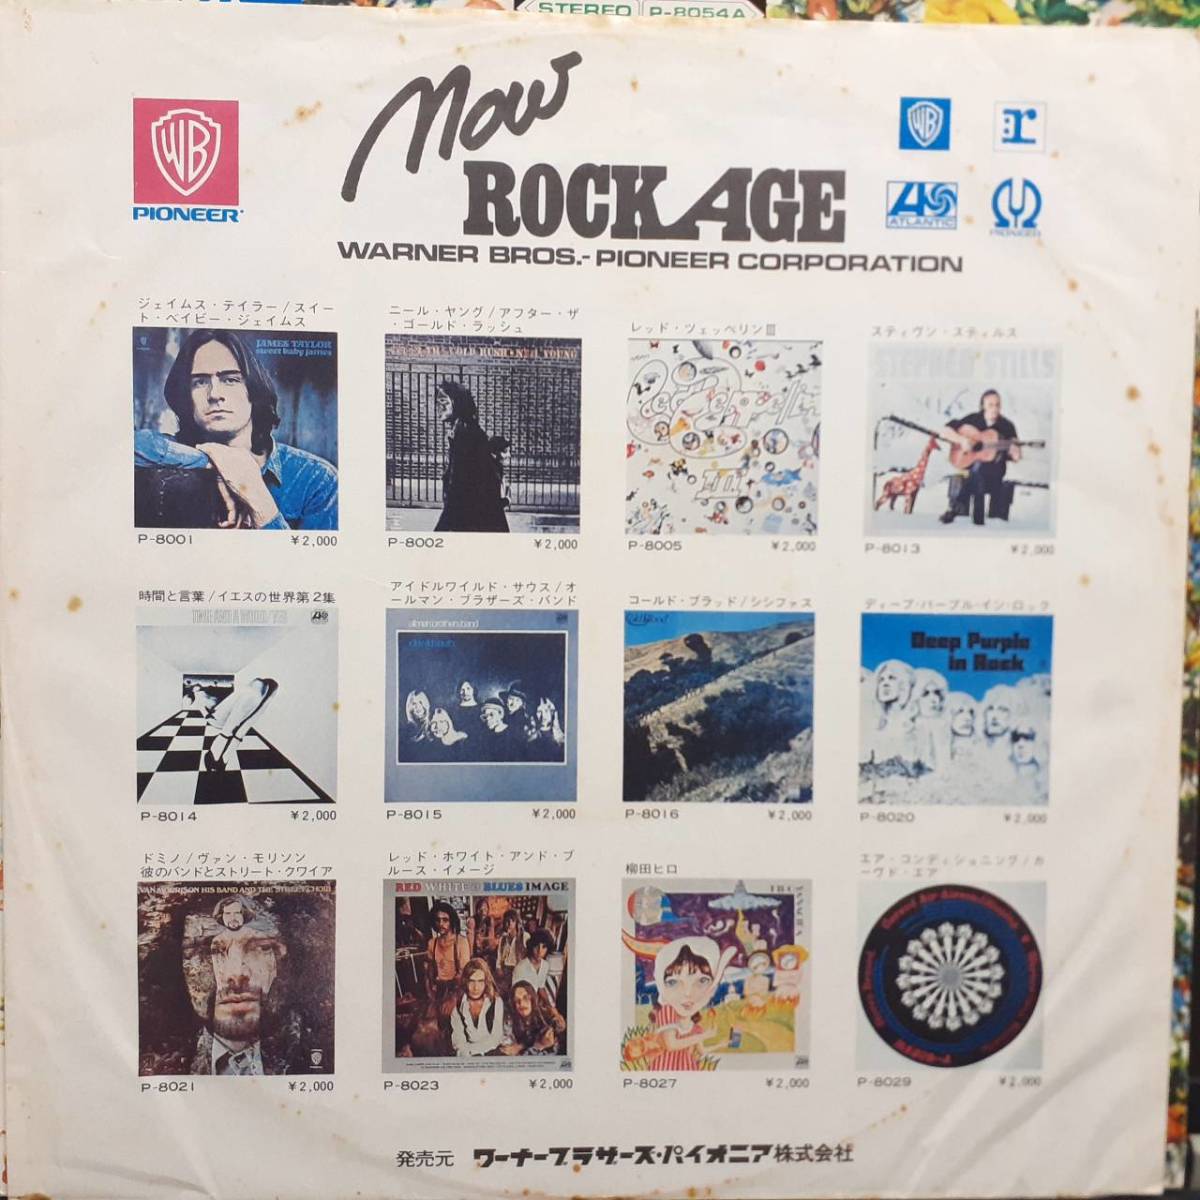 ロック・エイジ花帯 レア 日本盤LP帯付き Buffalo Springfield / Again 1971年 ATLANTIC P-8054A Rock Age OBI Neil Young, Stephen Stills_画像4